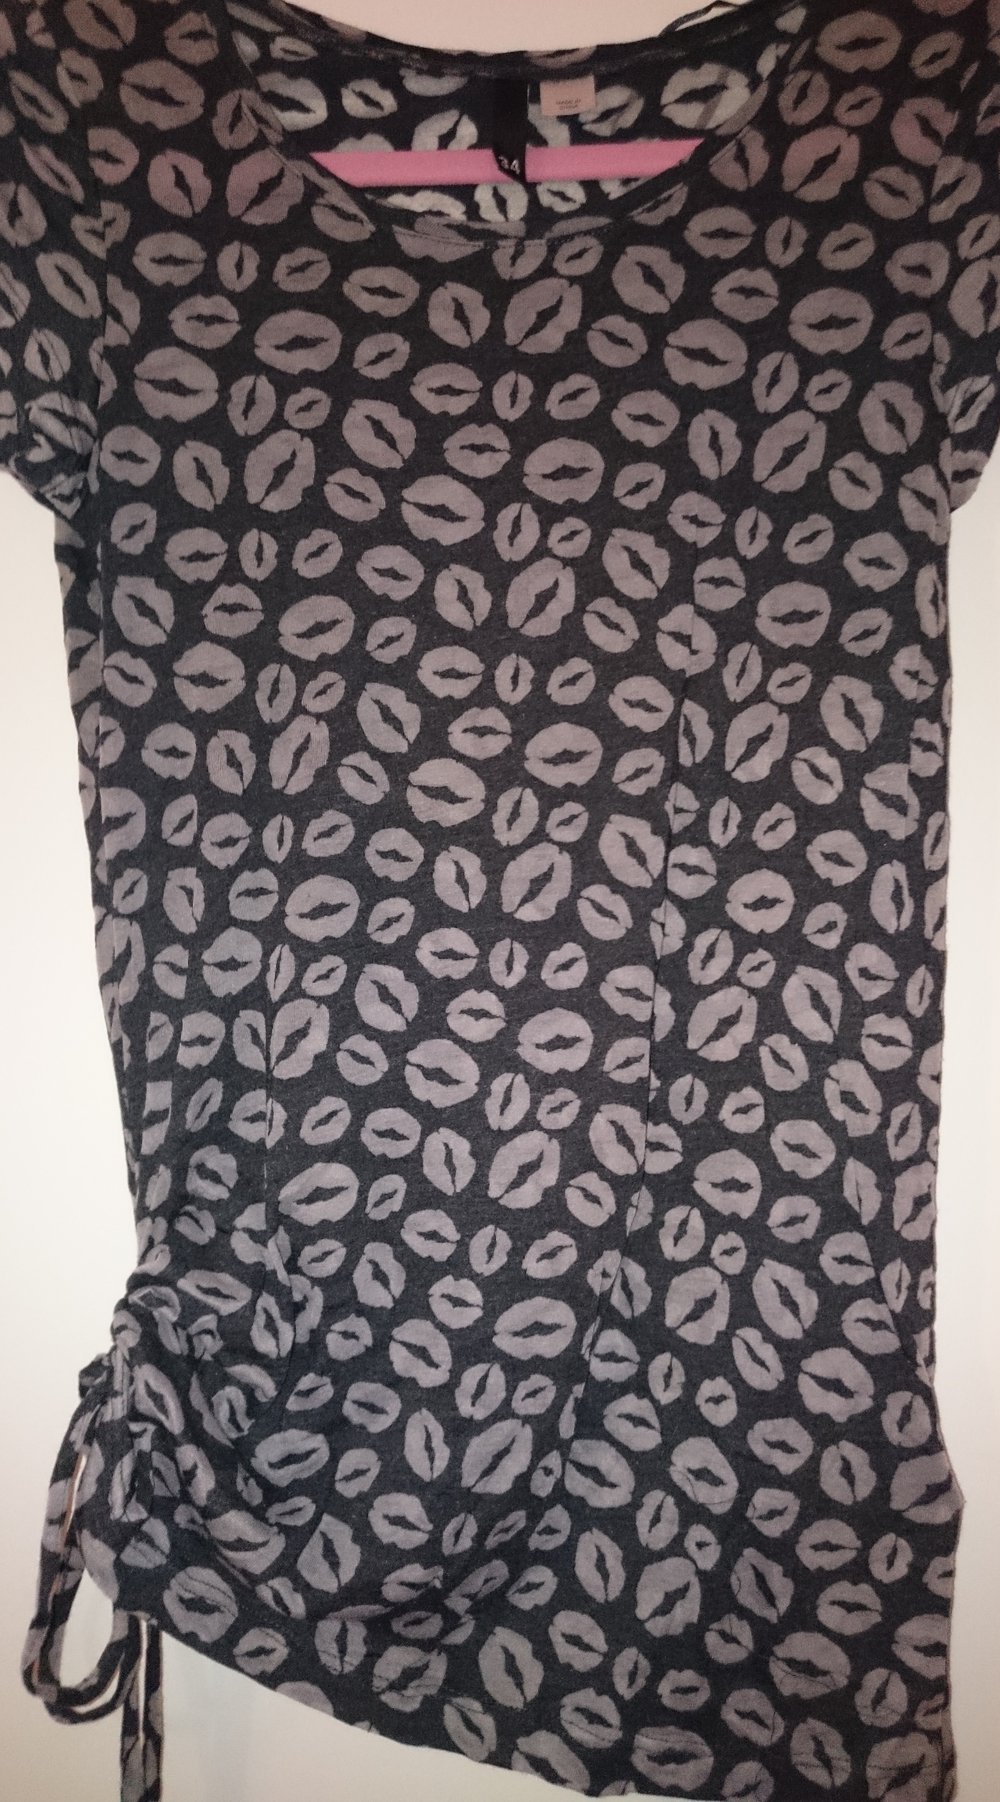 T-Shirt Kussmund schwarz-grau